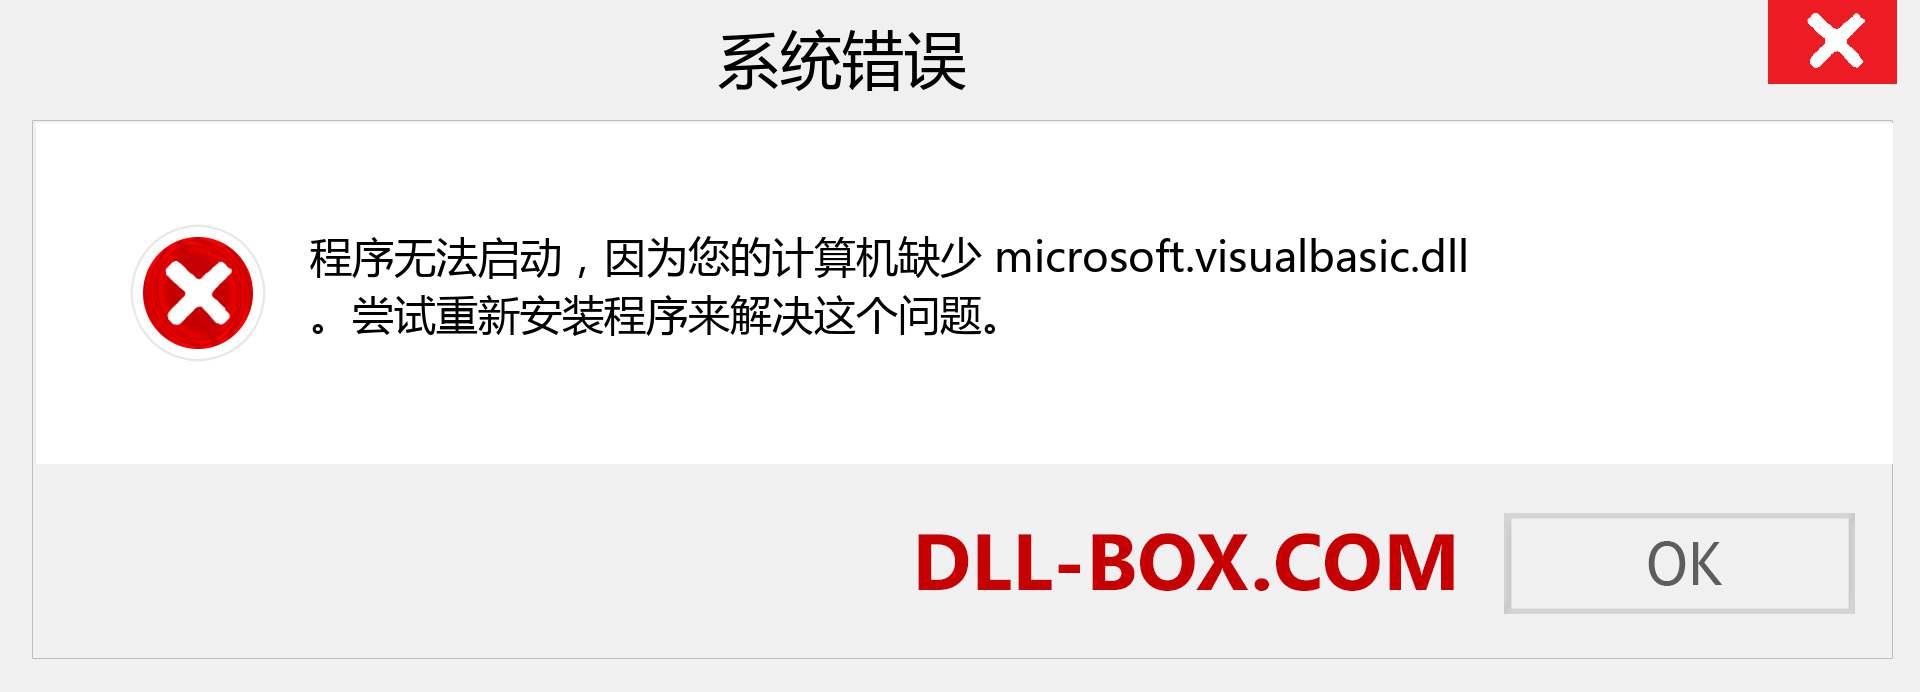 microsoft.visualbasic.dll 文件丢失？。 适用于 Windows 7、8、10 的下载 - 修复 Windows、照片、图像上的 microsoft.visualbasic dll 丢失错误